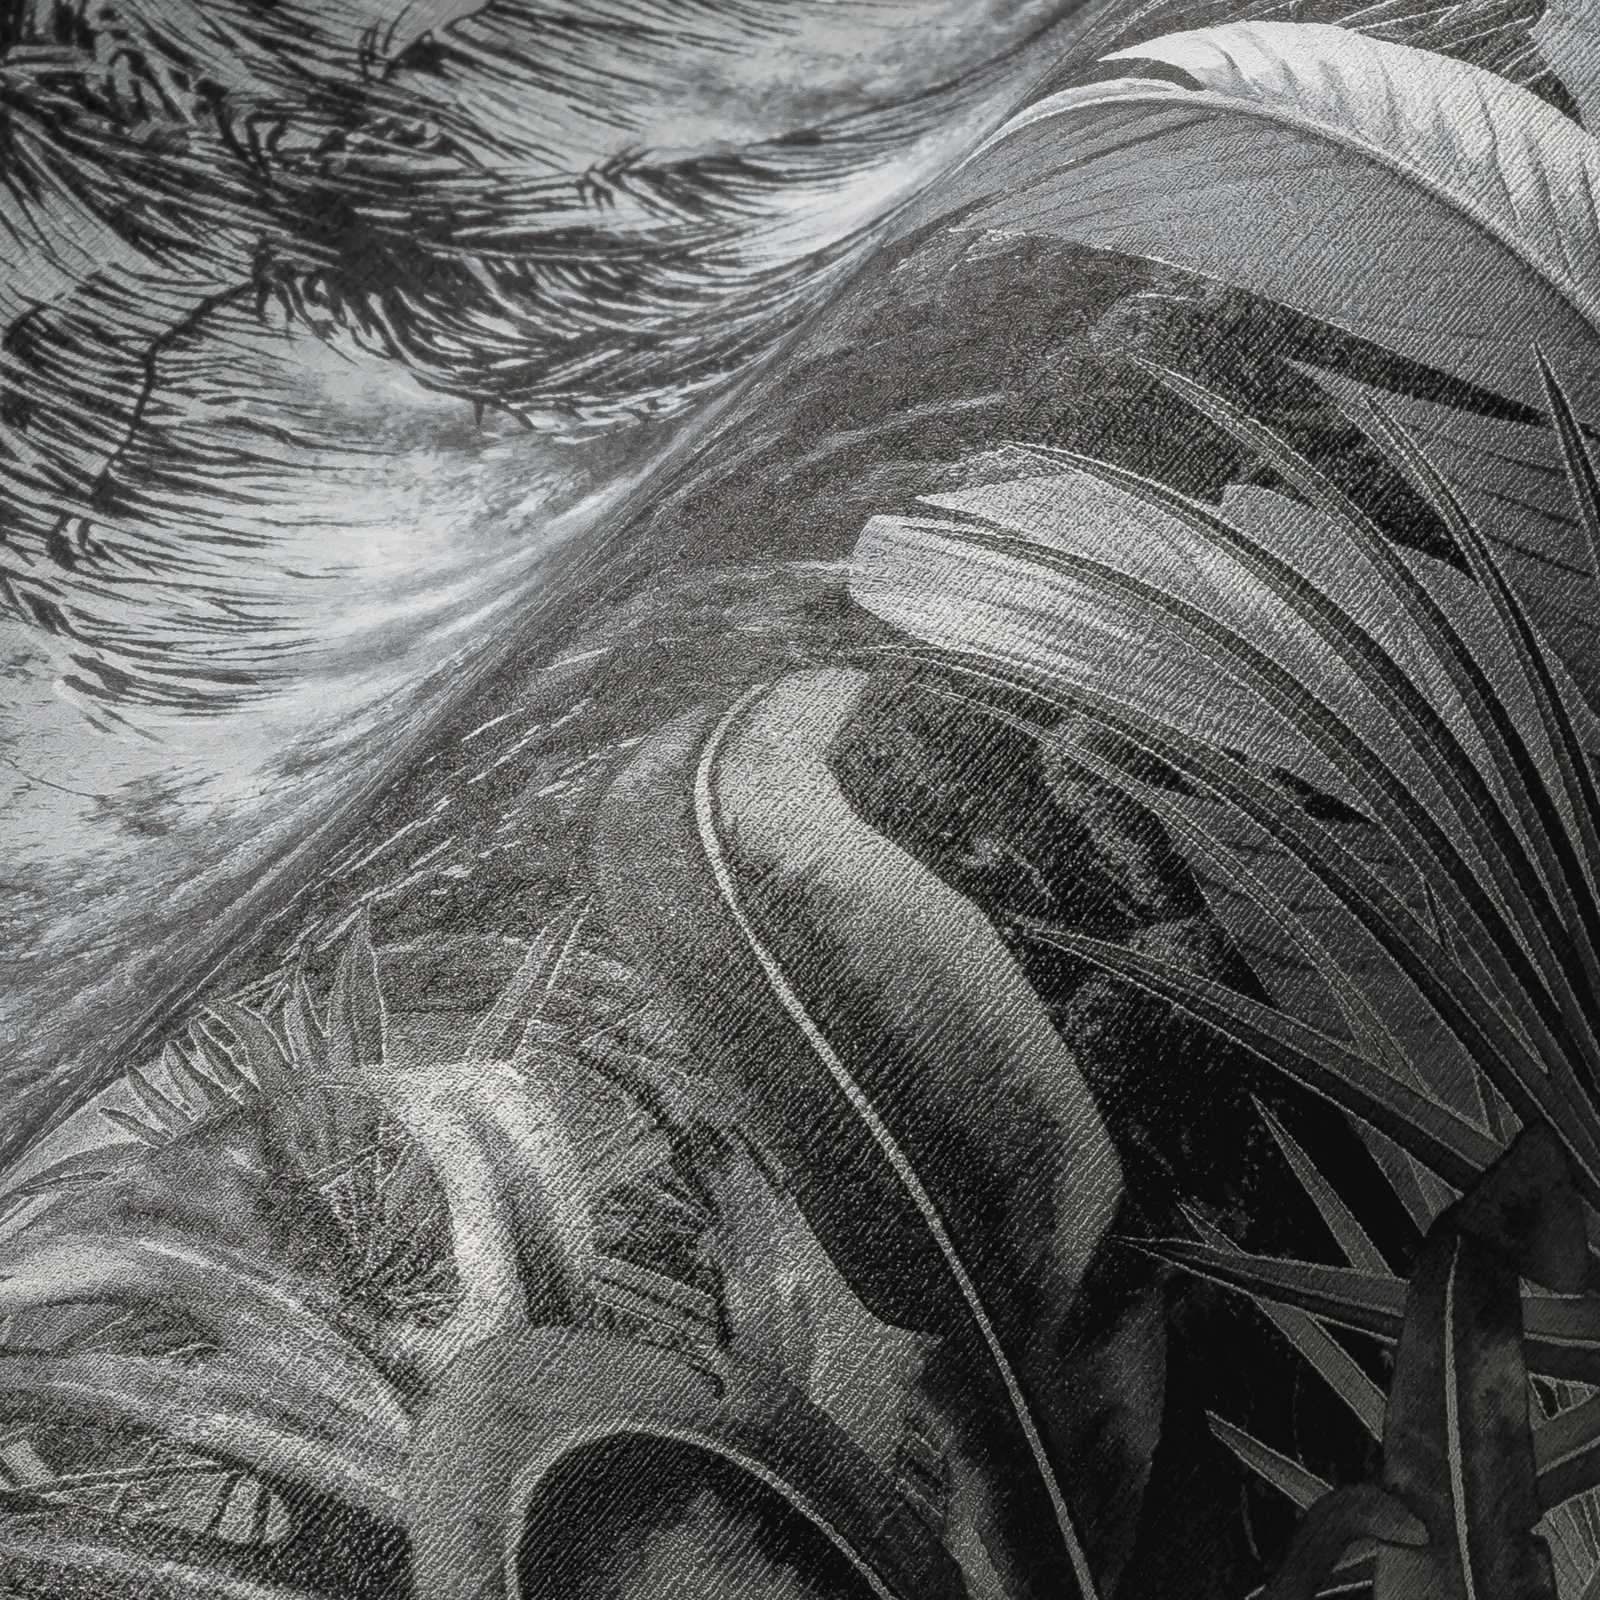             Zwart en wit behang jungle patroon met palmbomen
        